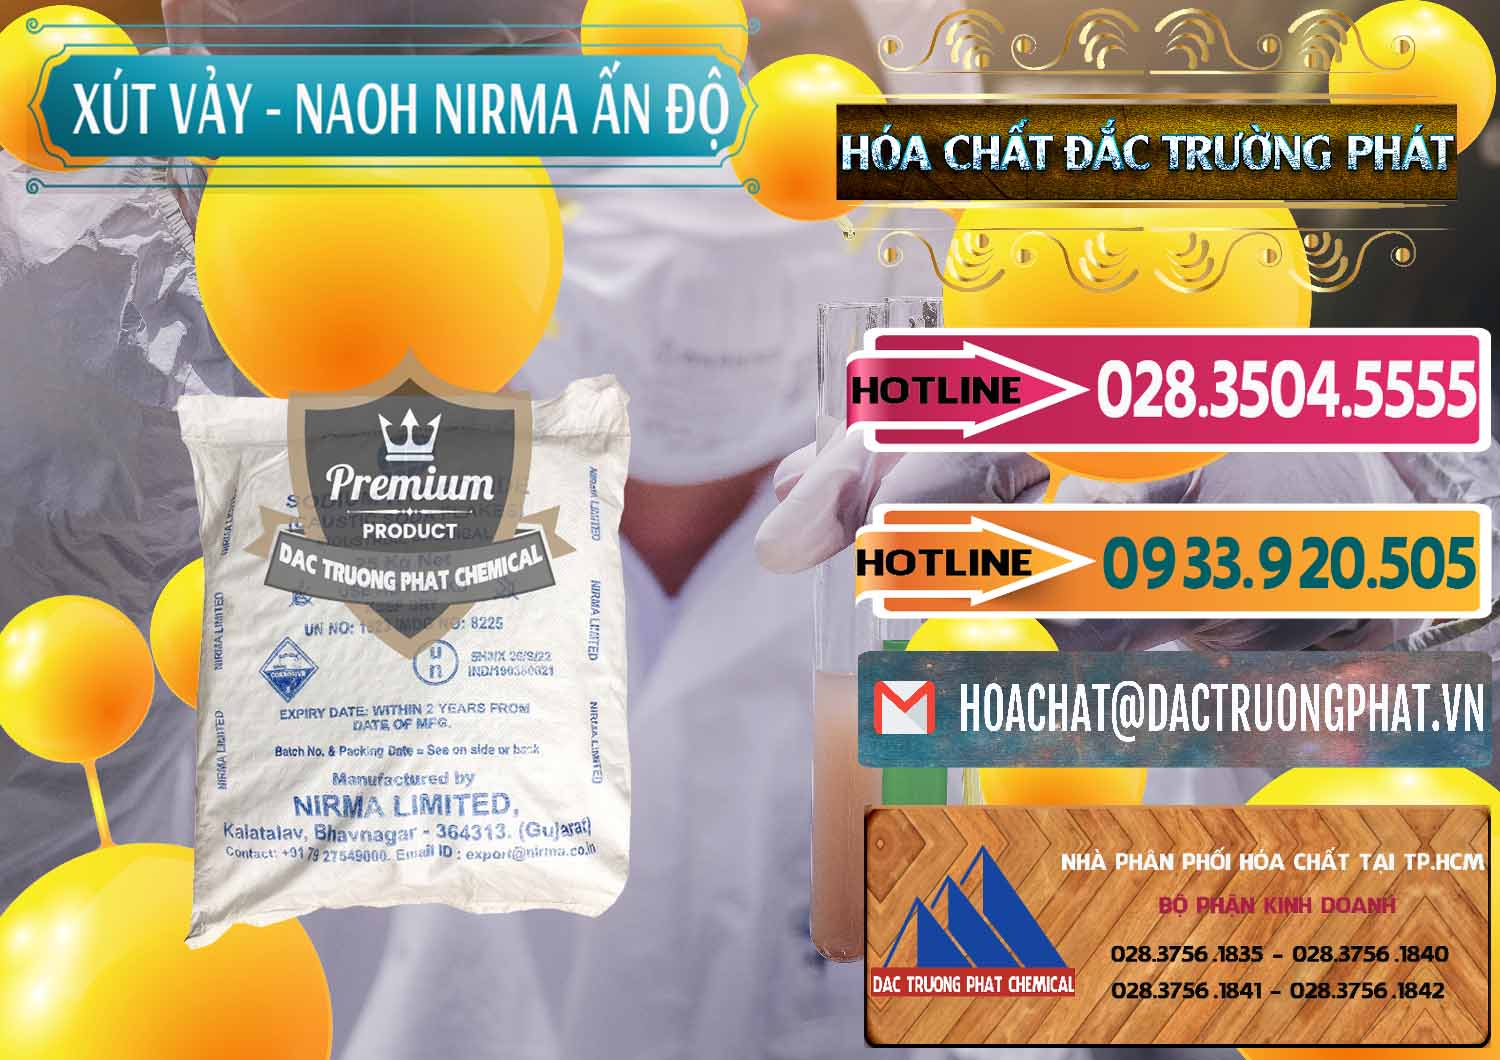 Công ty chuyên cung cấp & bán Xút Vảy - NaOH Vảy Nirma Ấn Độ India - 0371 - Cty chuyên bán - phân phối hóa chất tại TP.HCM - dactruongphat.vn